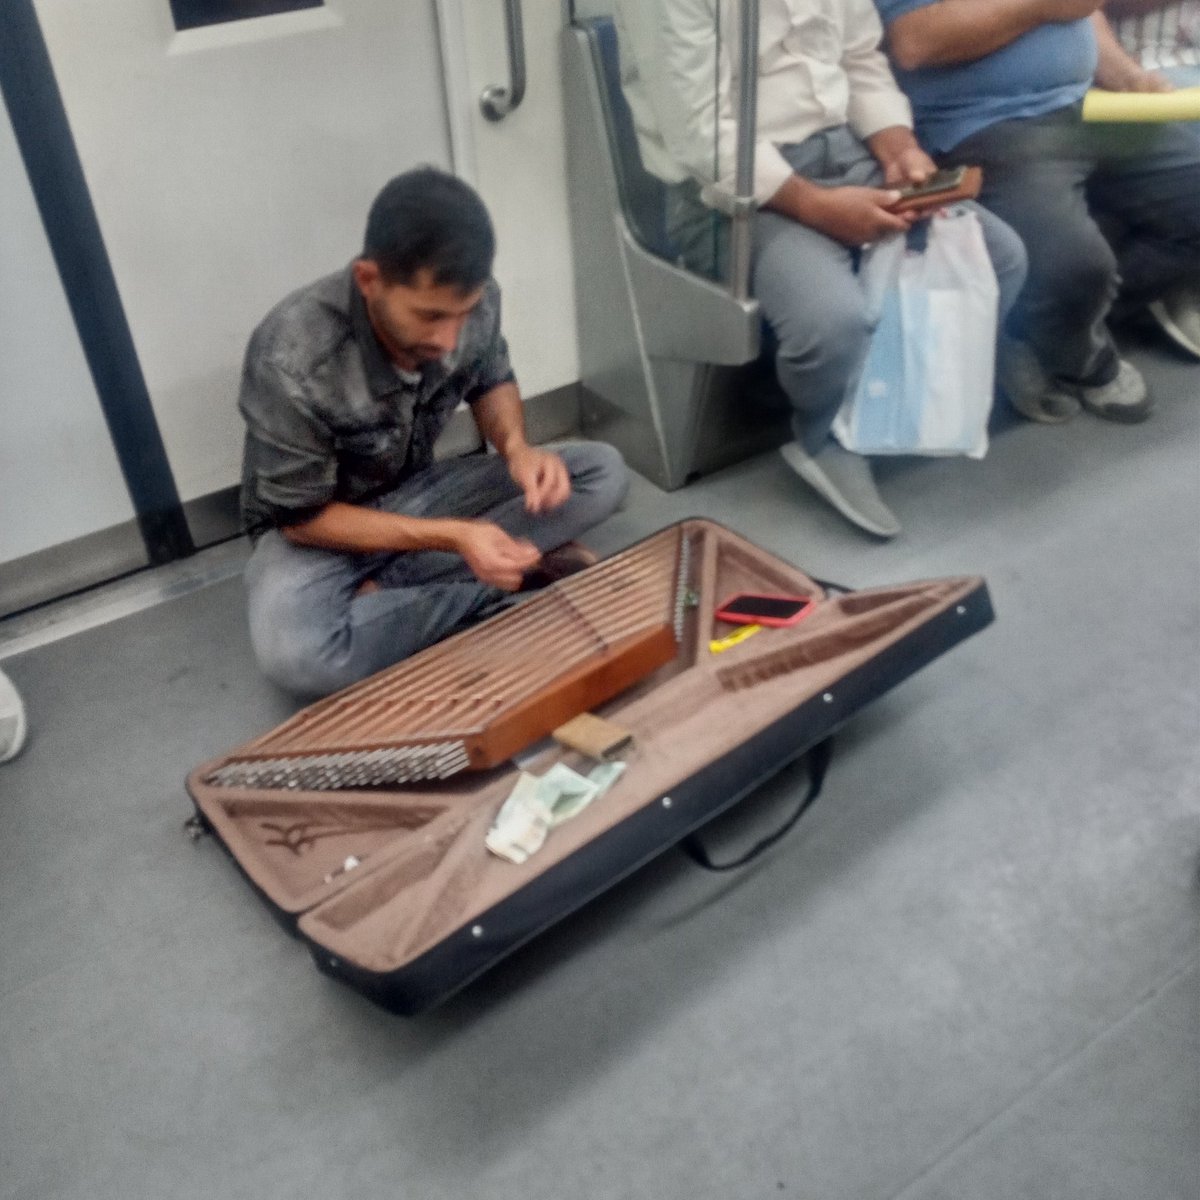 テヘランの地下鉄にはいつも物売りが大勢乗ってきて、様々な商品を展示販売するのですが（買う人もけっこういる）、伝統楽器カーヌーンのコンパクト版のようなものを演奏している人も見かけました。あまりうまくなくて、そばに座っている乗客に指導を受けていました😸